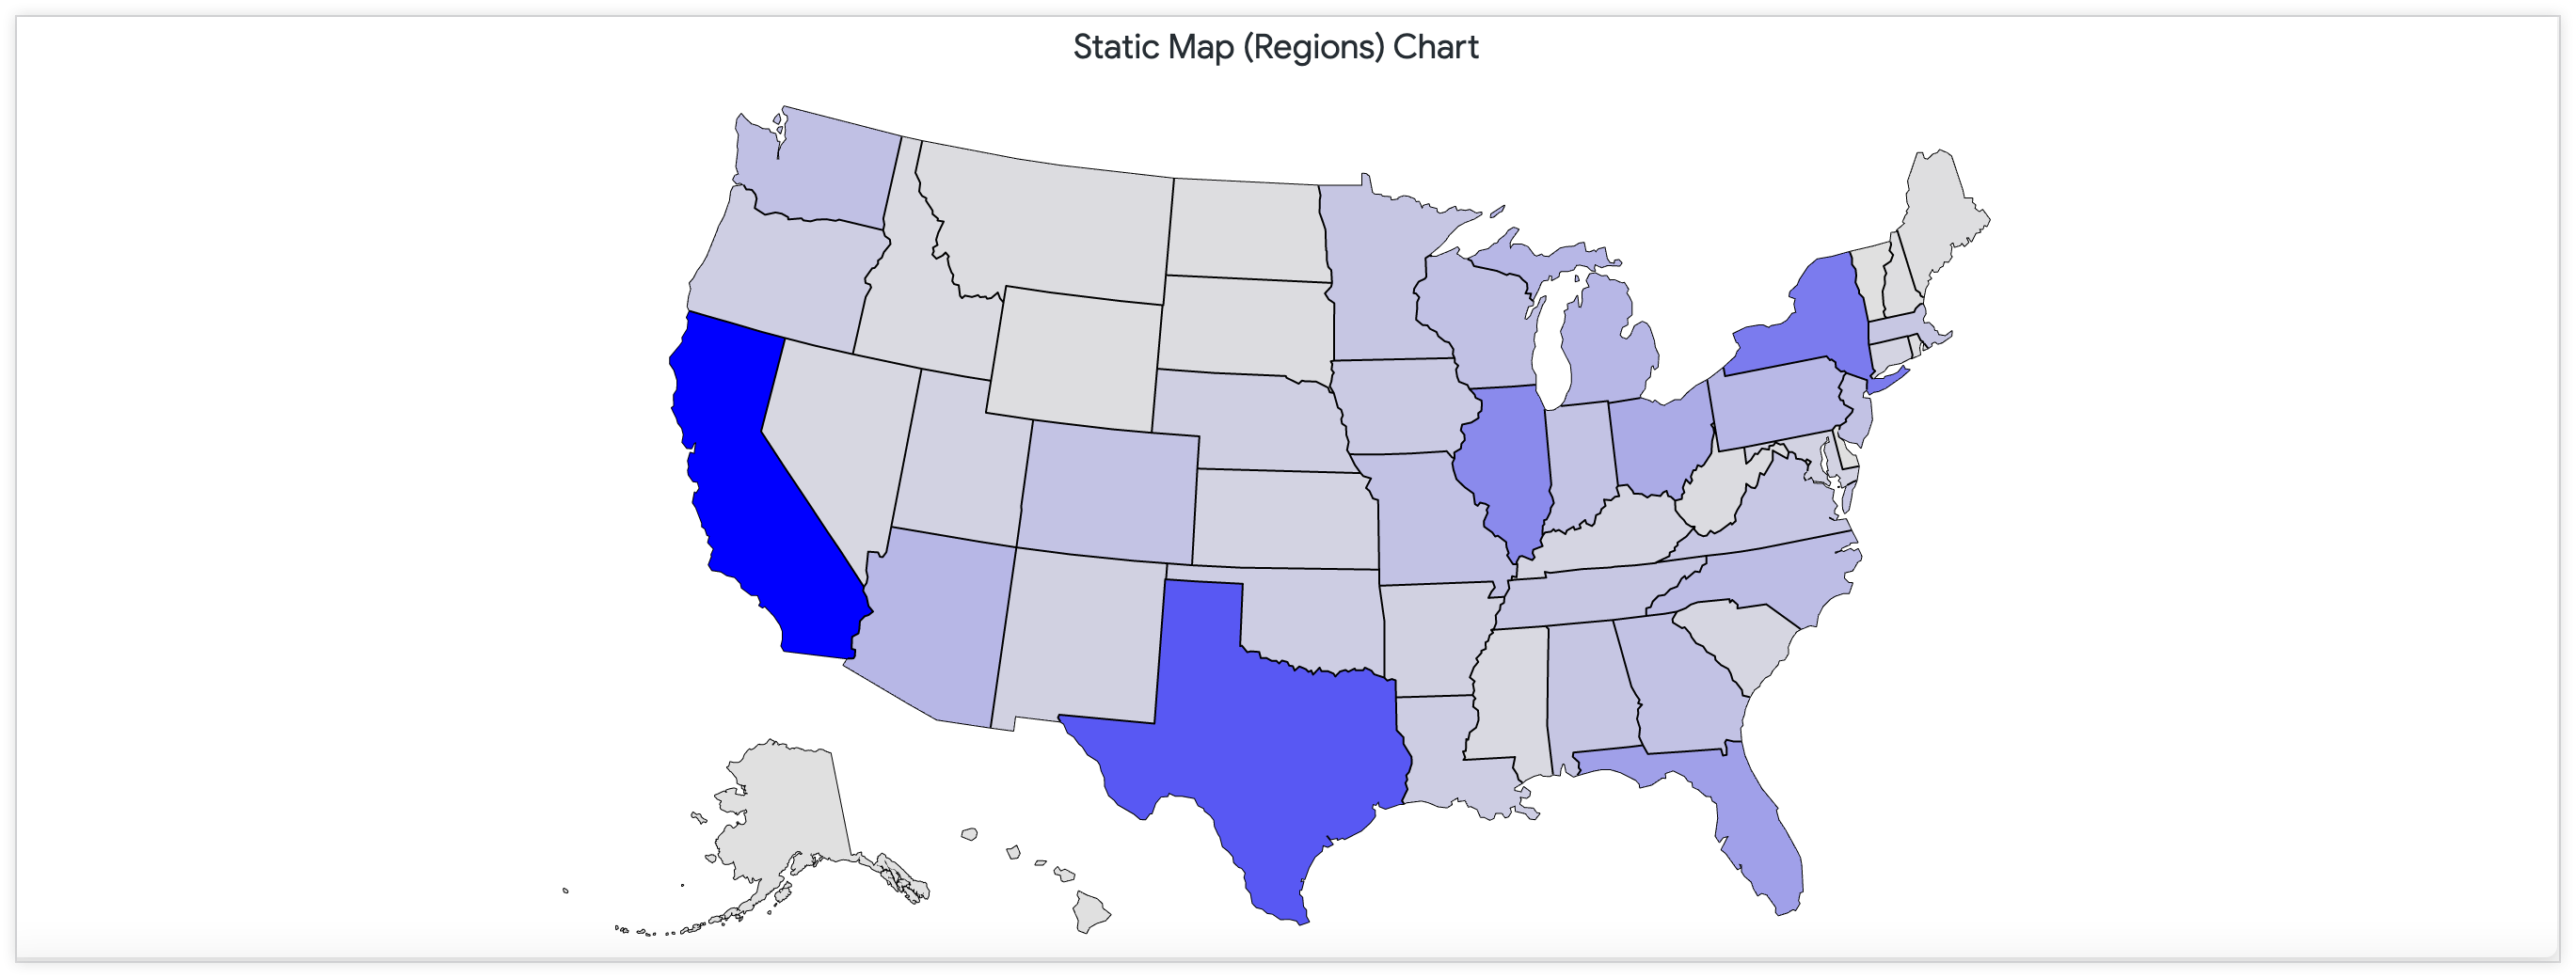 連続するカラーパレットを使用して米国の店舗の数を示す静的マップ。